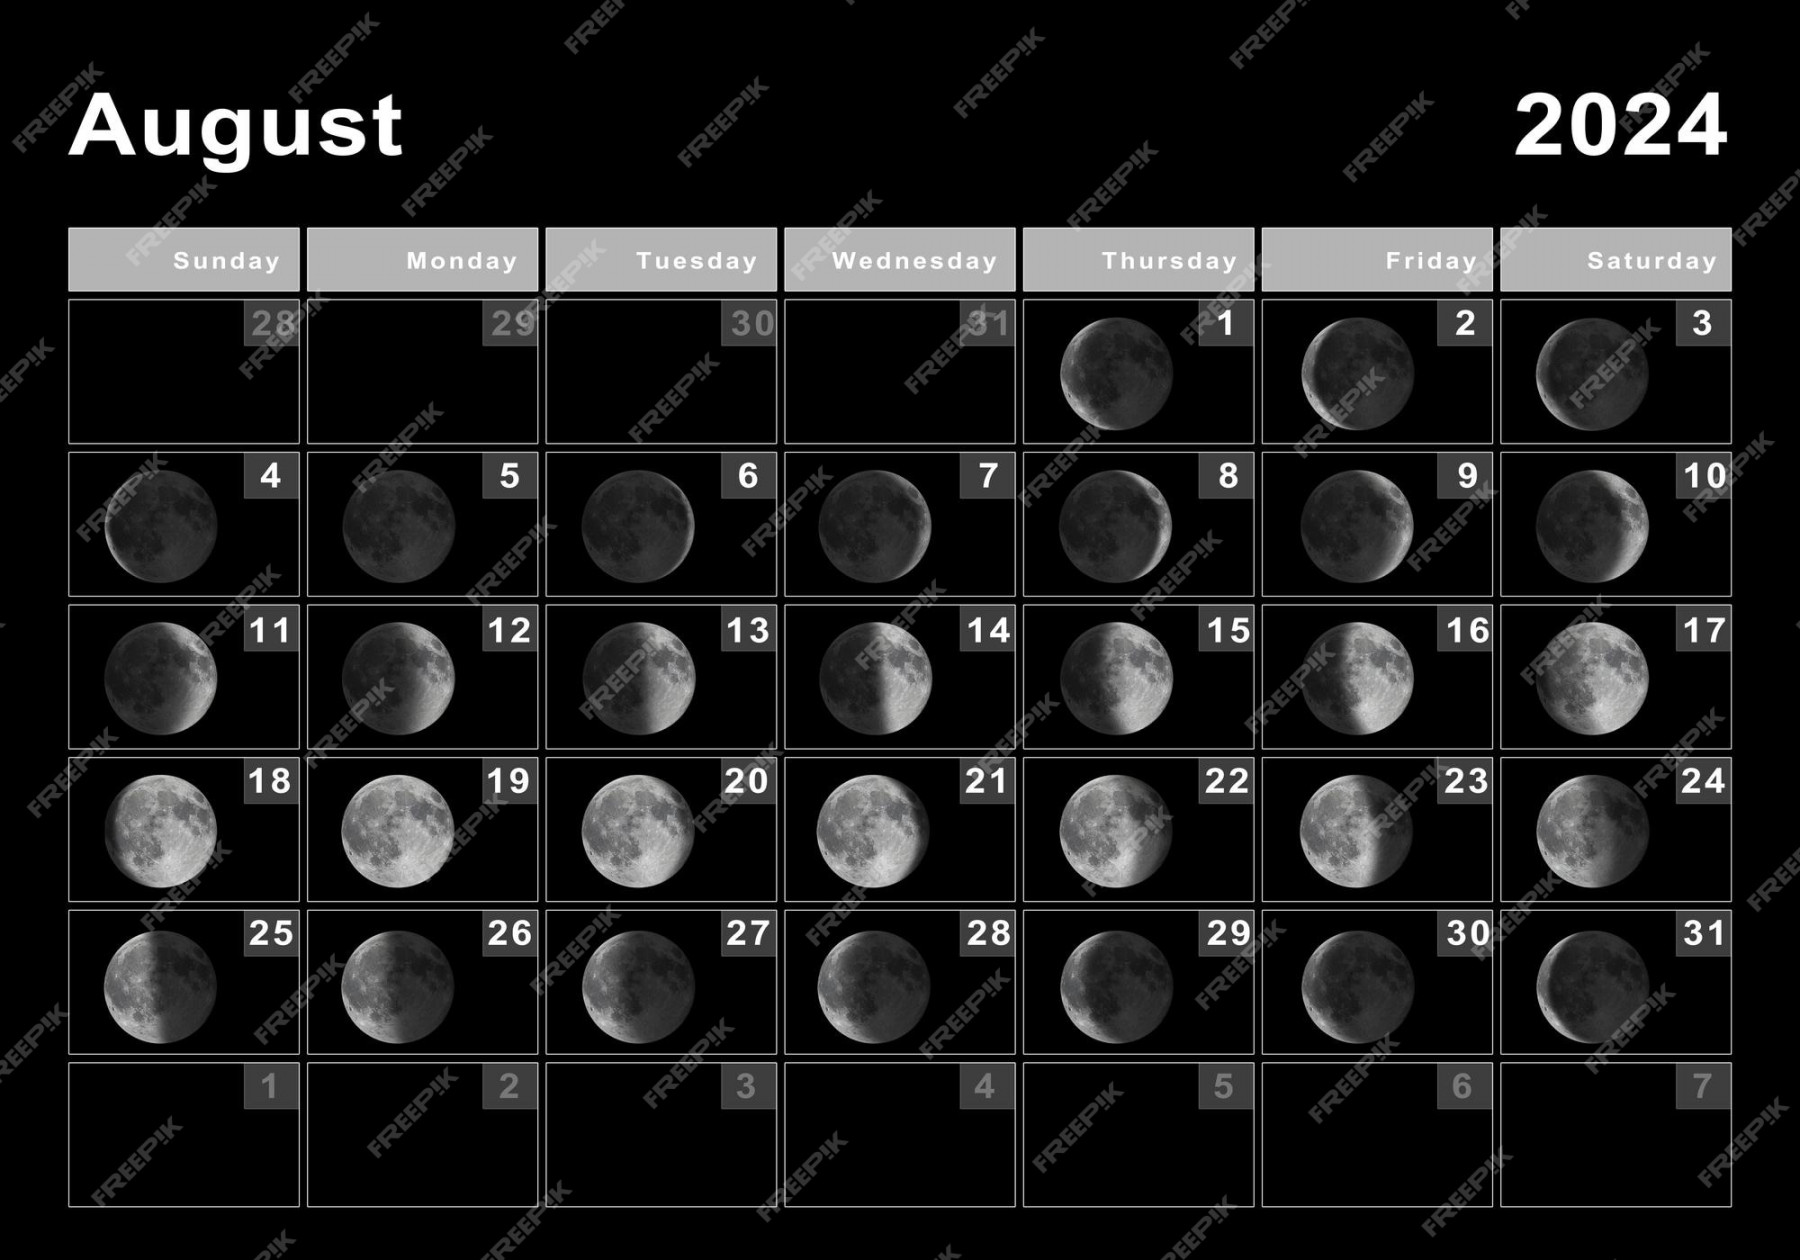 Premium Photo  August  lunar calendar, moon cycles, moon